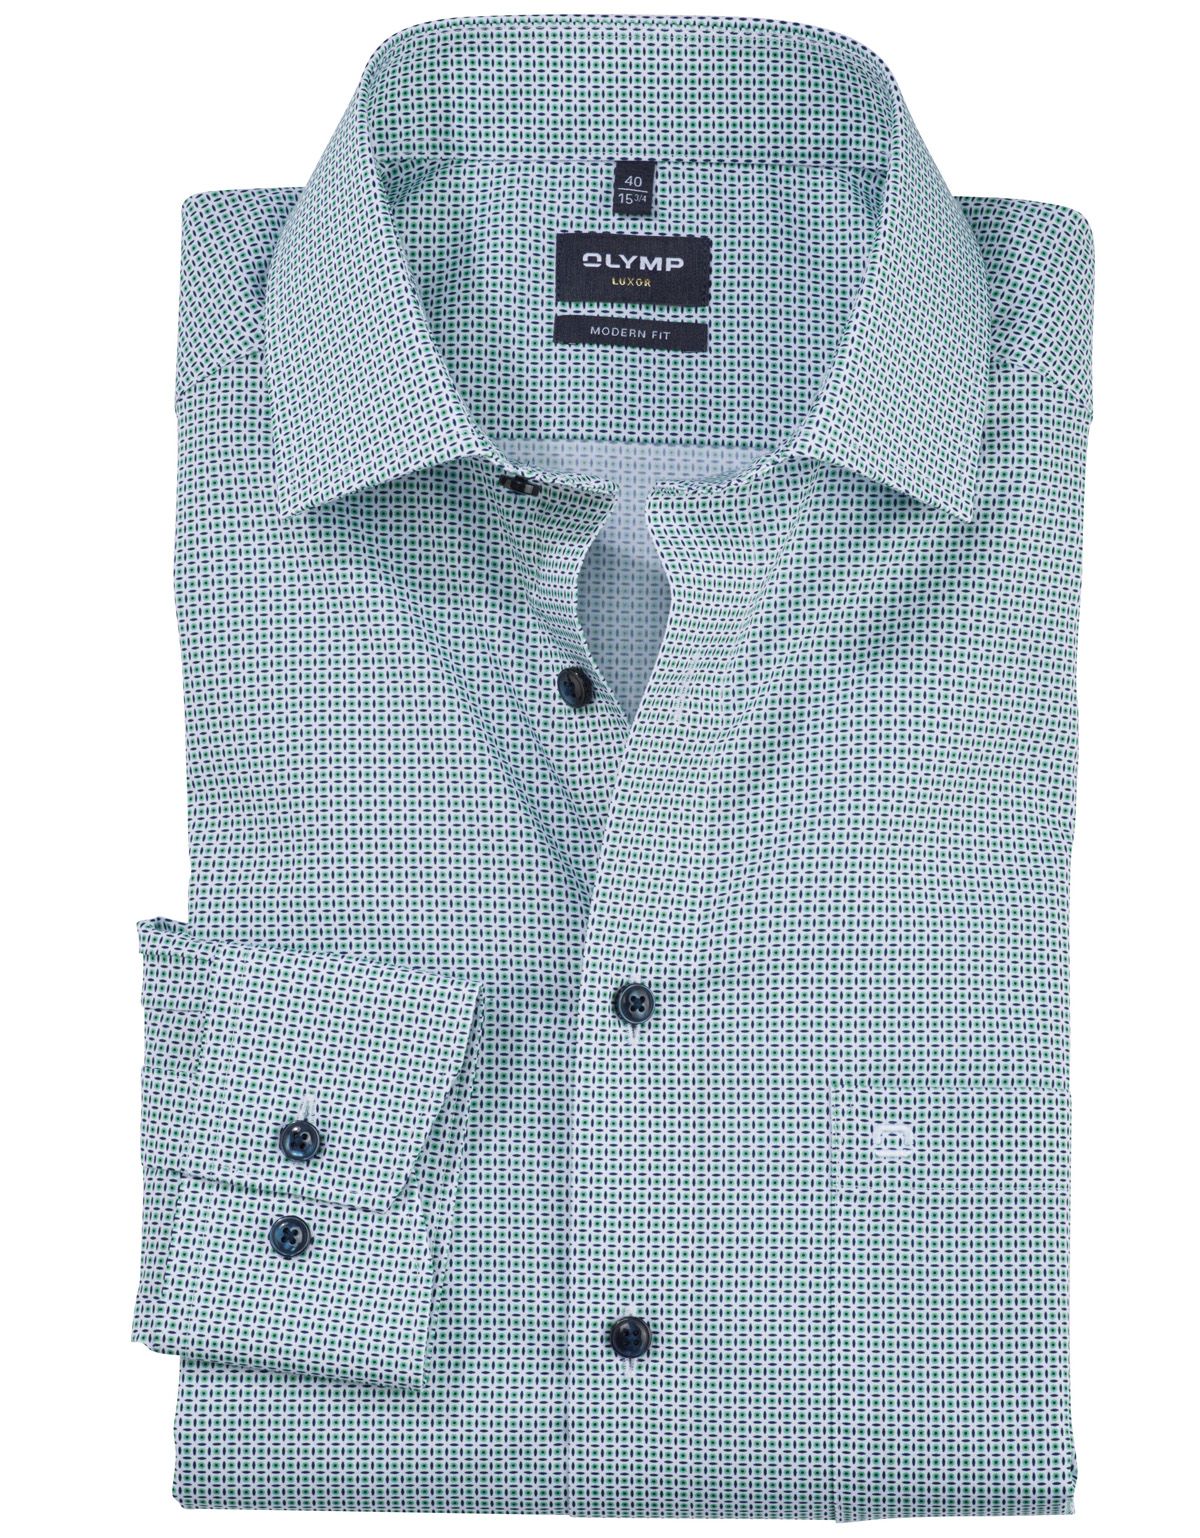 Рубашка мужская классическая в клетку OLYMP Luxor, modern fit[ЗЕЛЁНЫЙ]